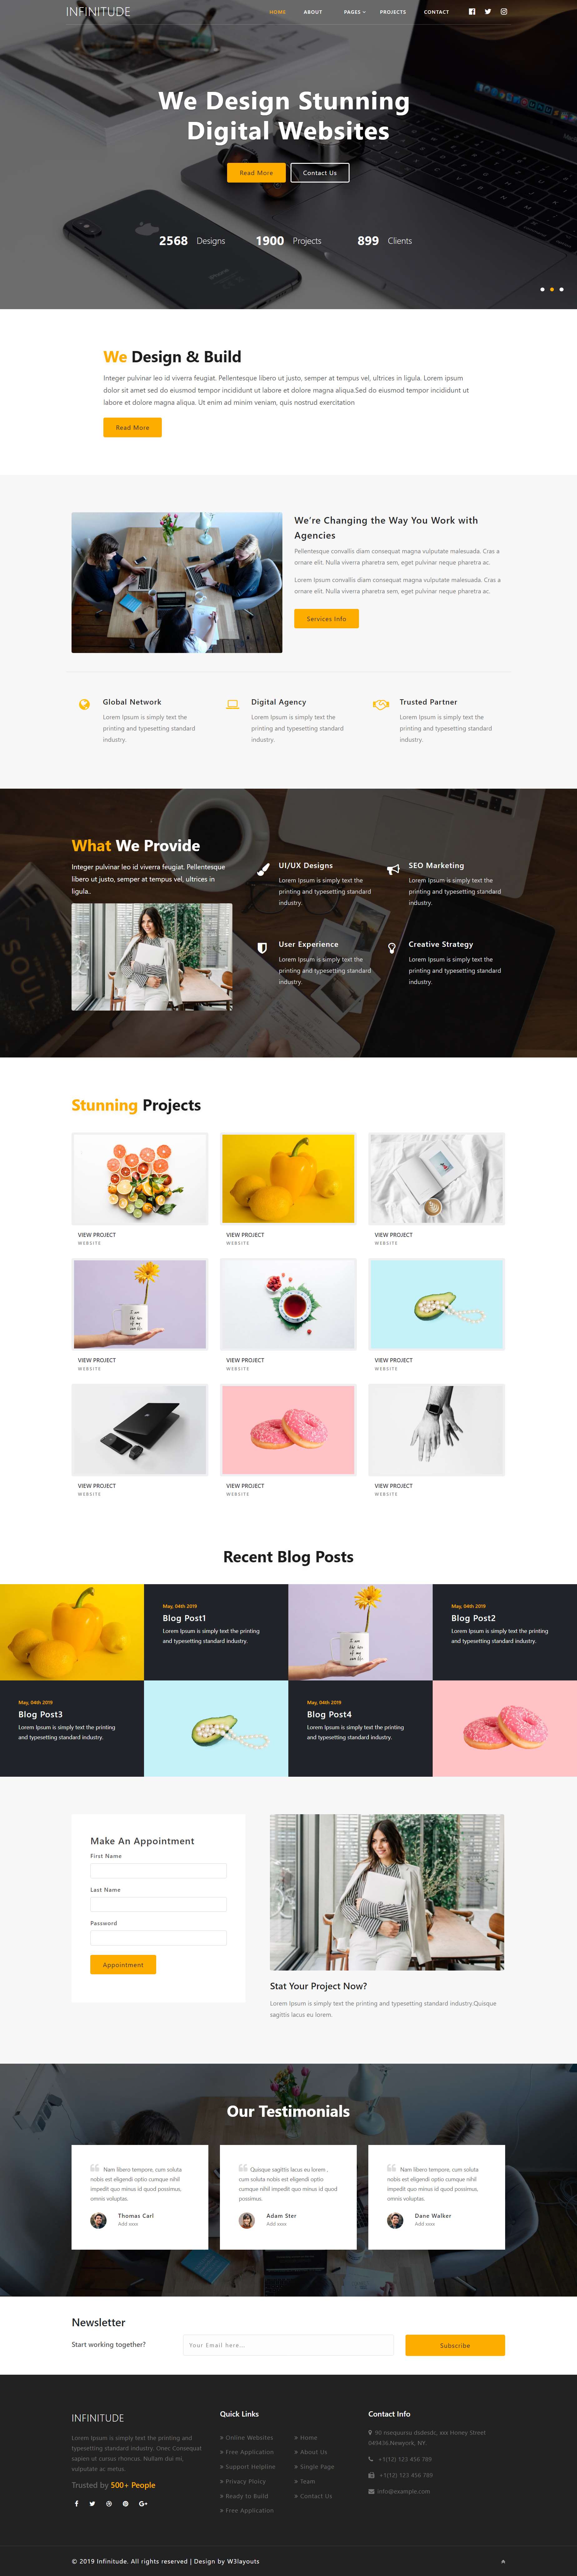 黄色欧美风格响应式WEB设计网页模板